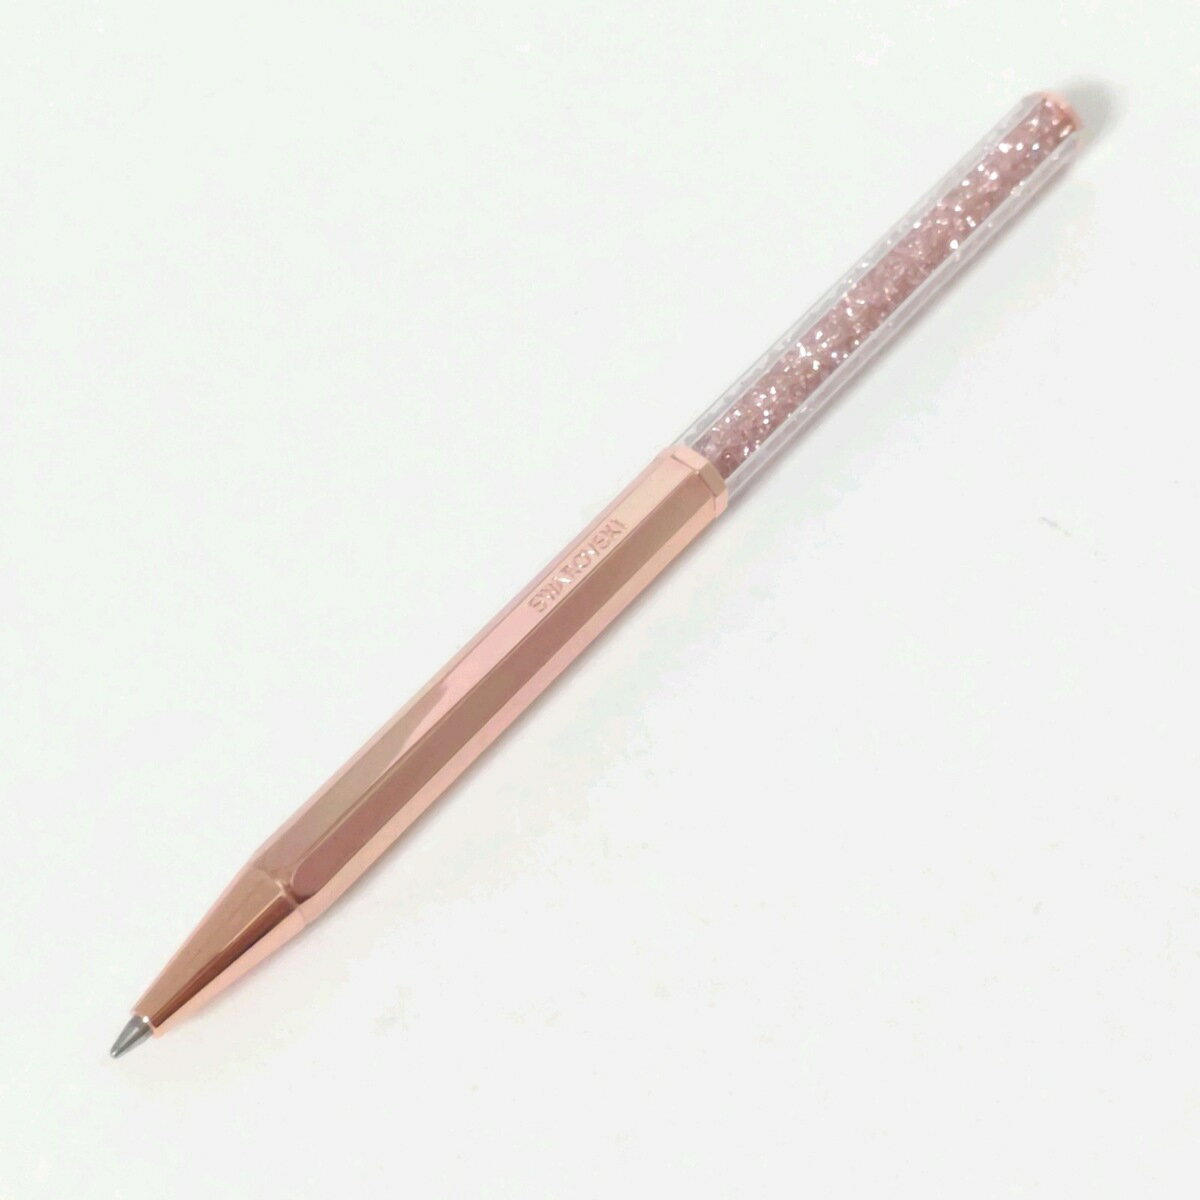 【中古】SWAROVSKI(スワロフスキー) ボールペン インクあり(黒) ピンクゴールド×クリア 金属素材×スワロフスキークリスタル×プラスチック